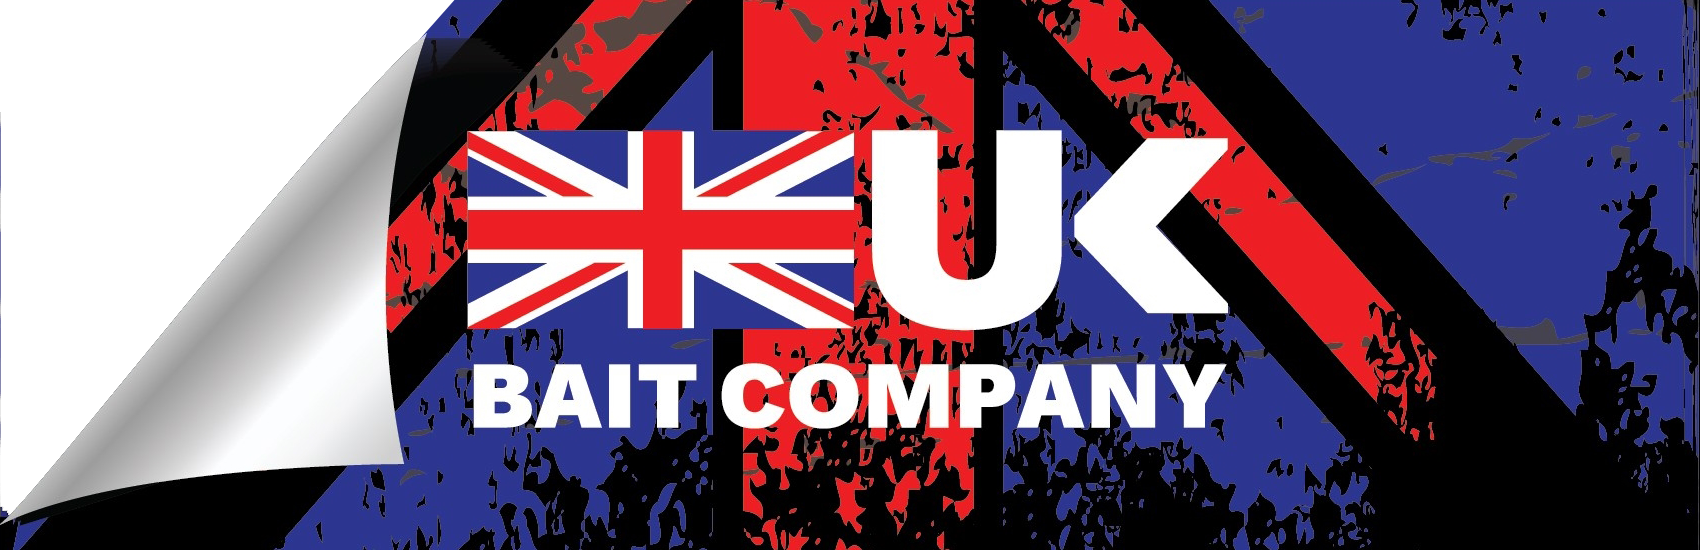 UK bait company